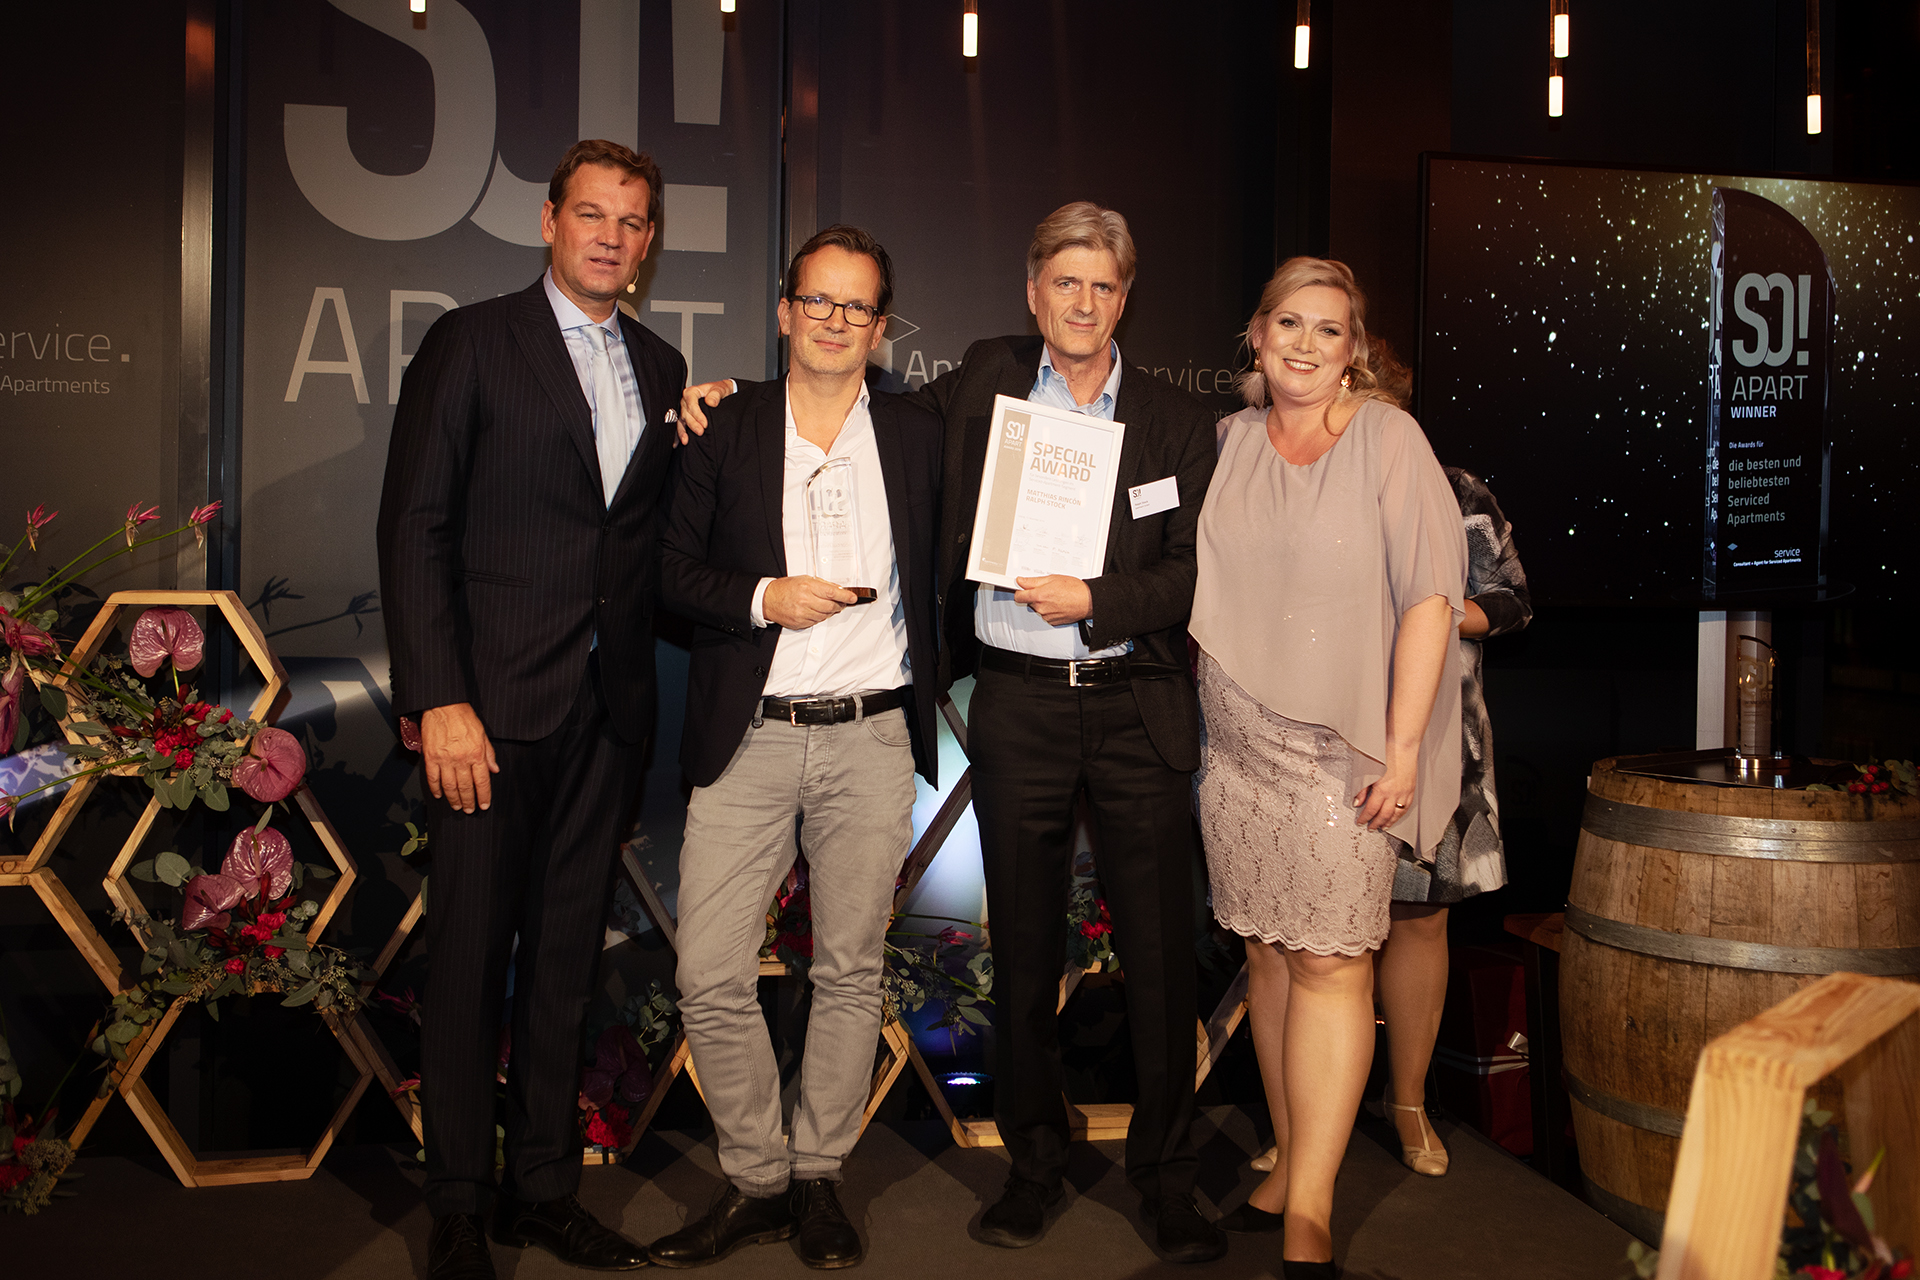 Gewinner des Special Awards für ein besonderes Konzept, Matthias Rincón und Ralph Stock, Gründer und Geschäftsführer von iPartment. Copyright: JuliaBaumgartPhotography, Apartmentservice